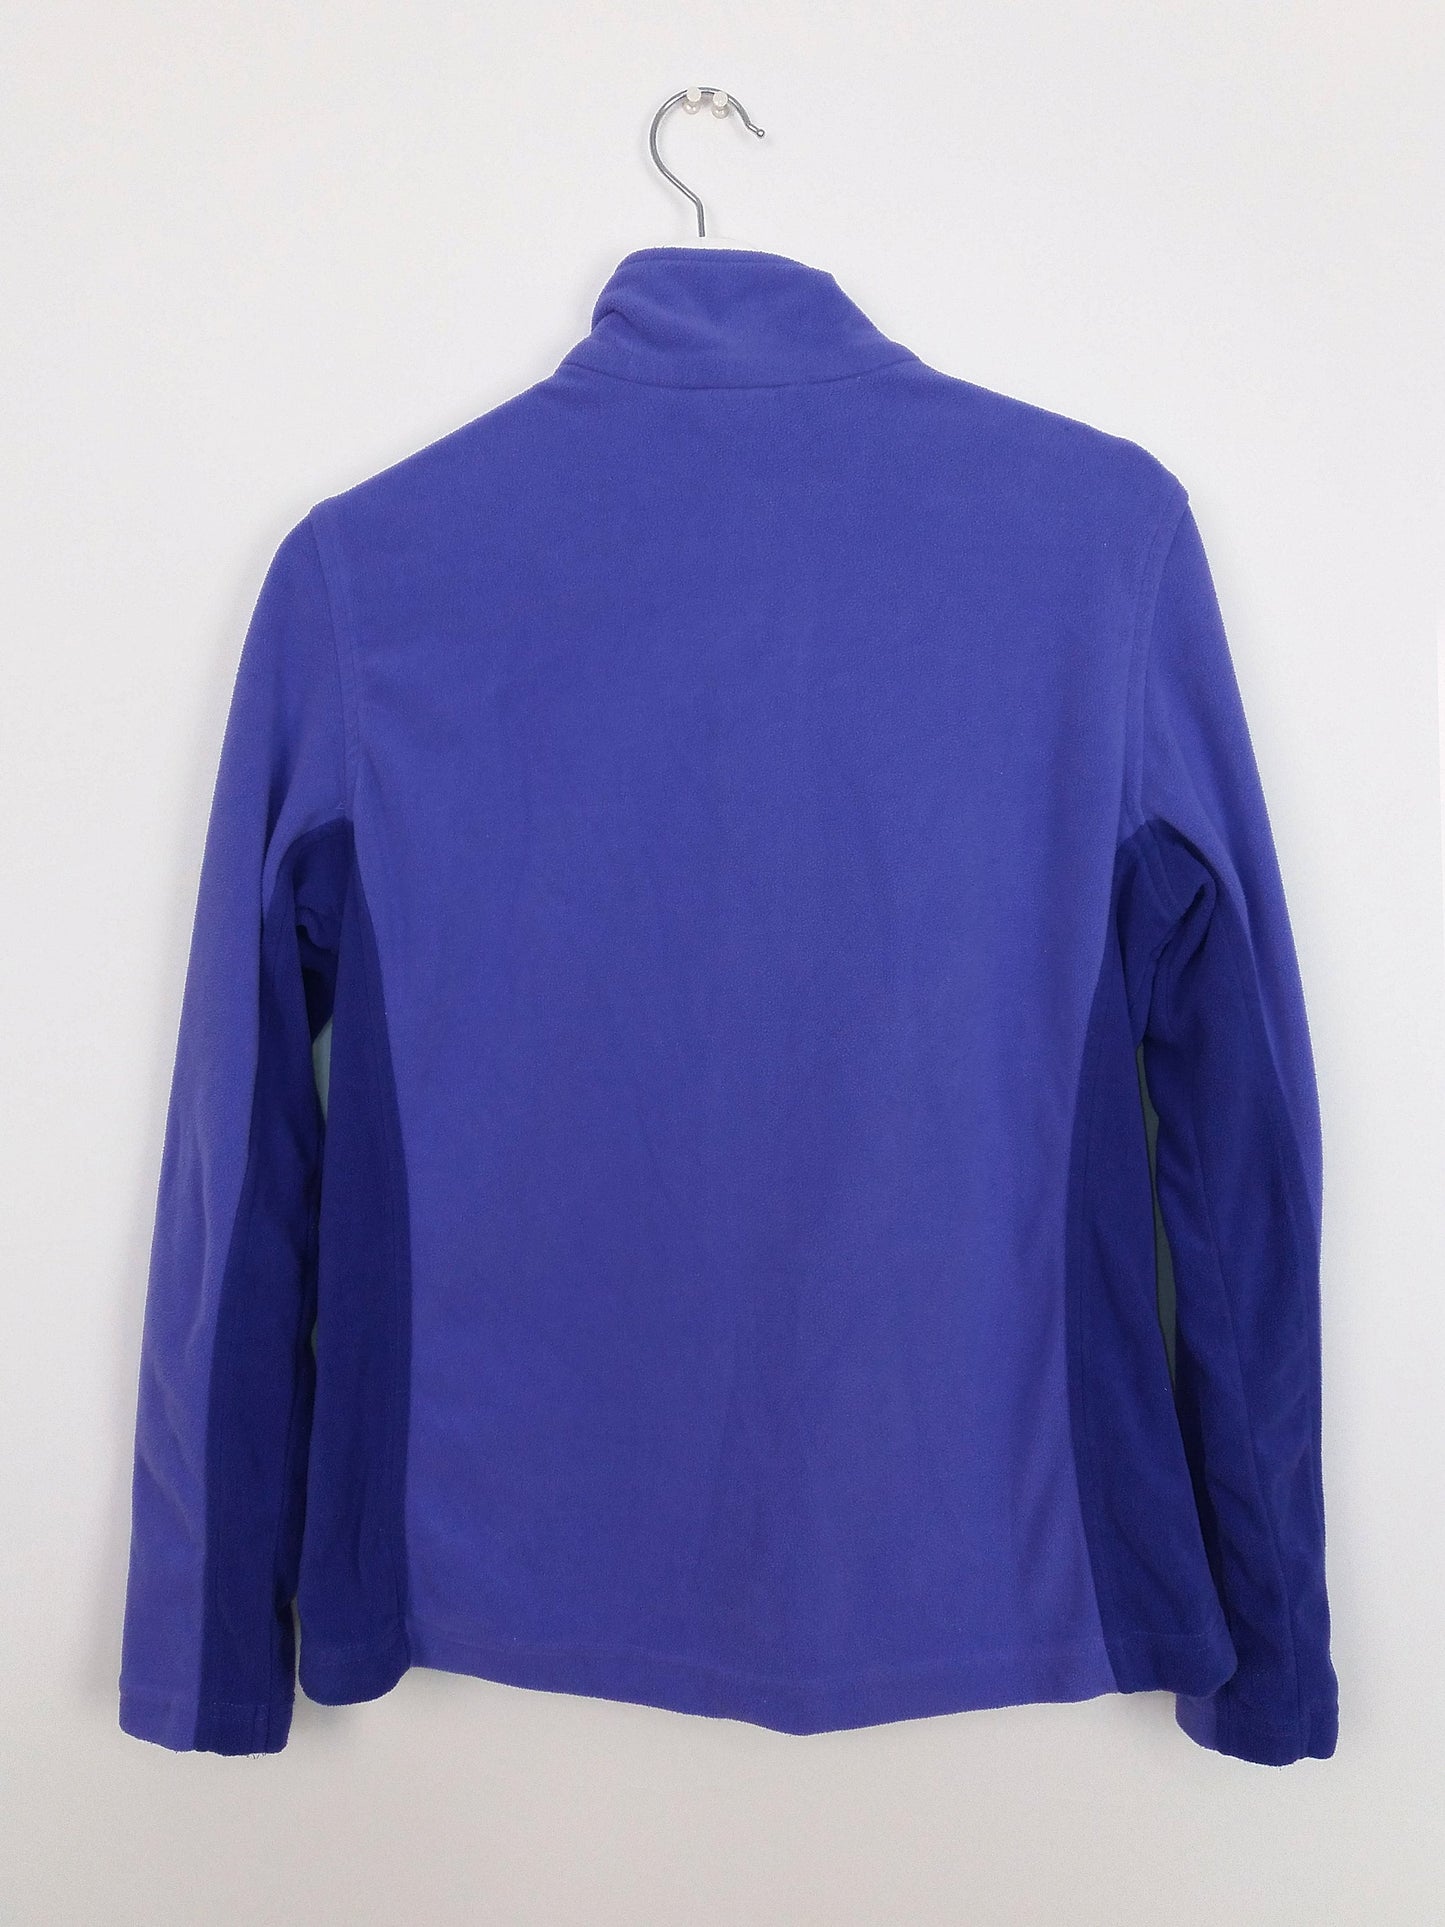 CRIVIT Trekking Zip-up Fleece Jacket - size S